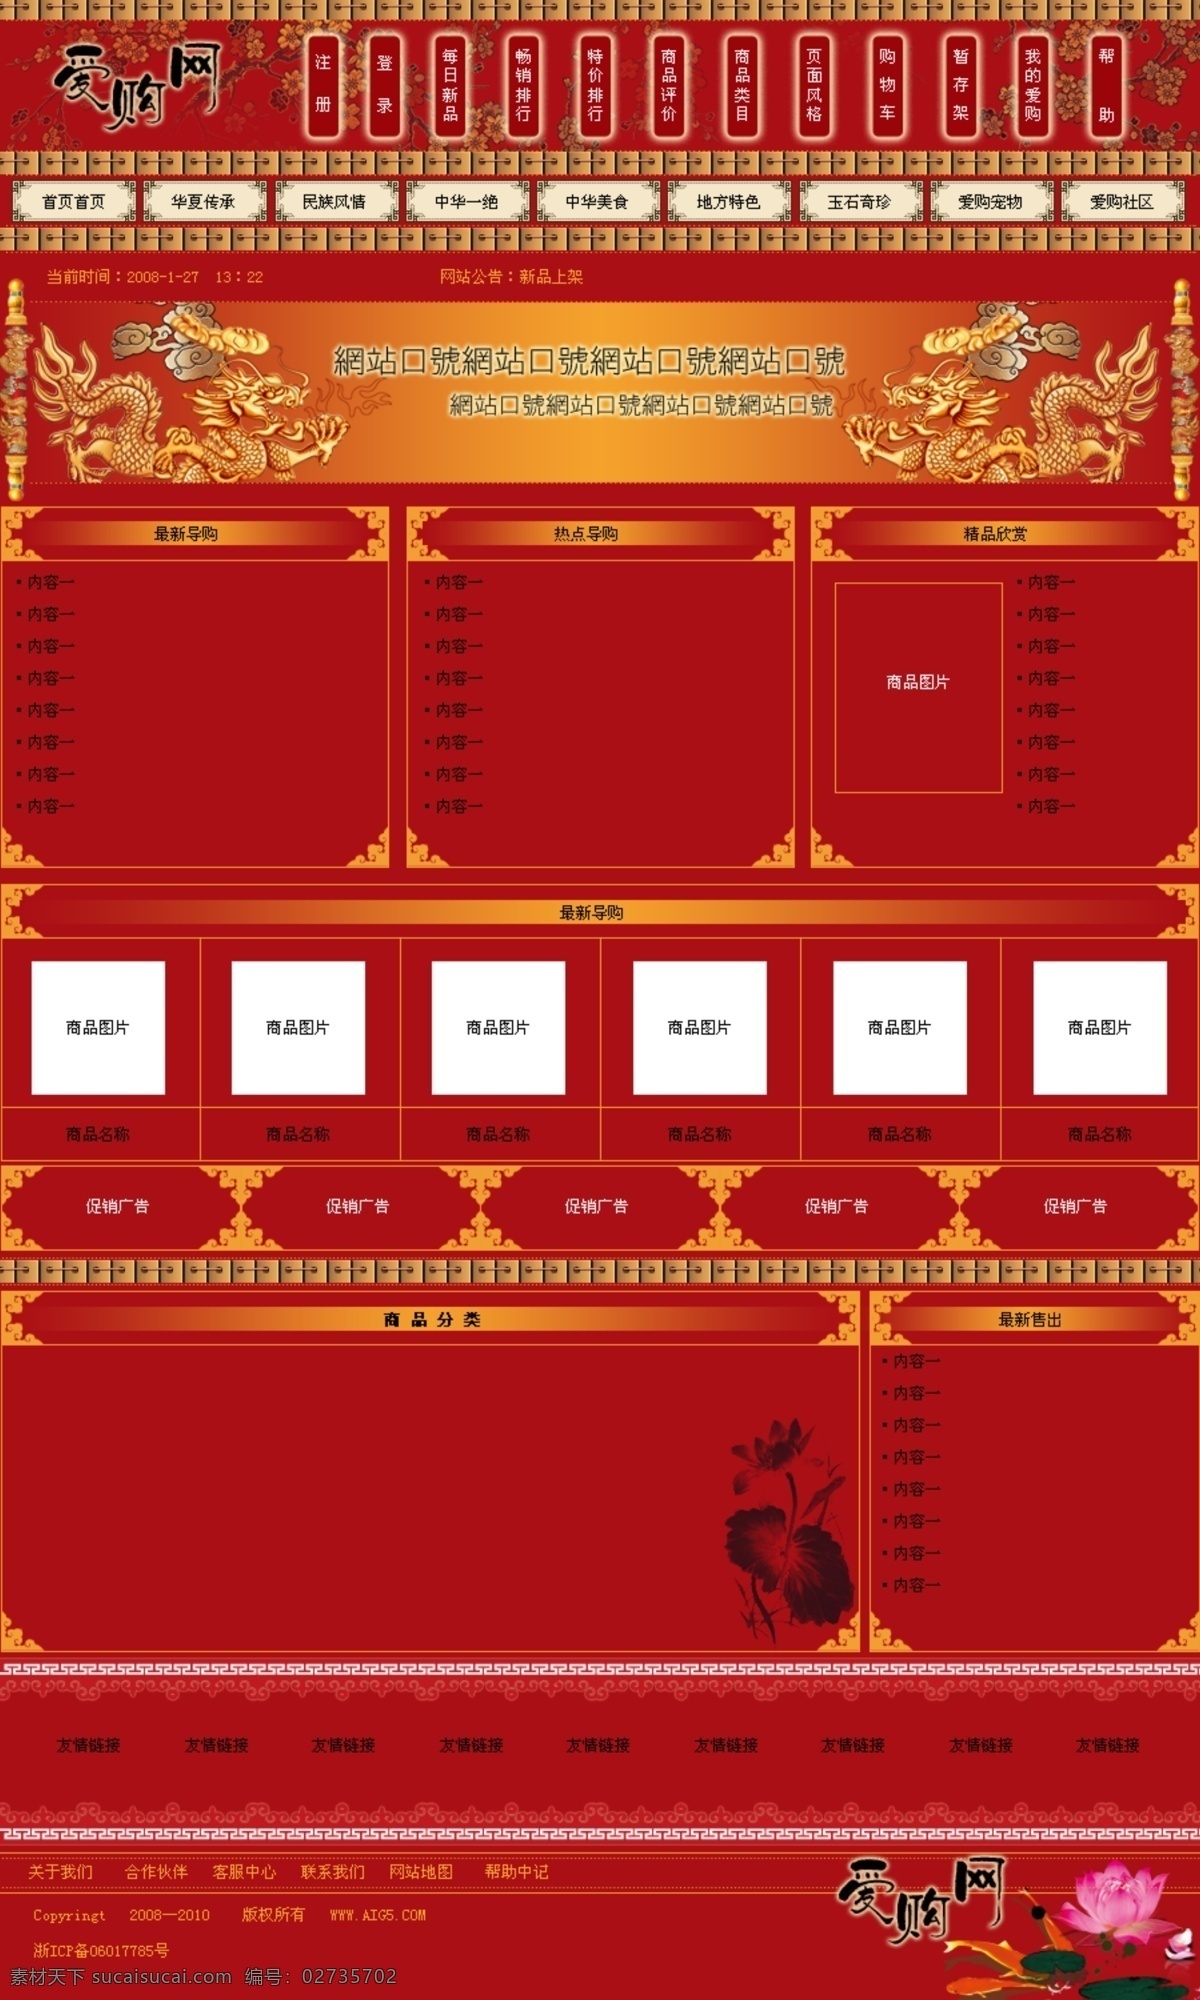 网页模板 网页模版 源文件 中文模版 中国 风 红色 网页 模版 购物网站模版 古典网页模版 企业网页模版